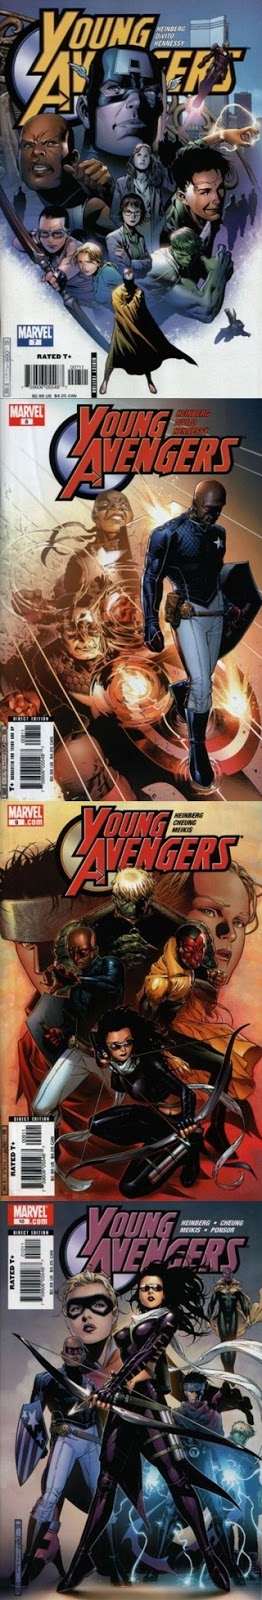 Portadas Young Avengers 7-12 - 01